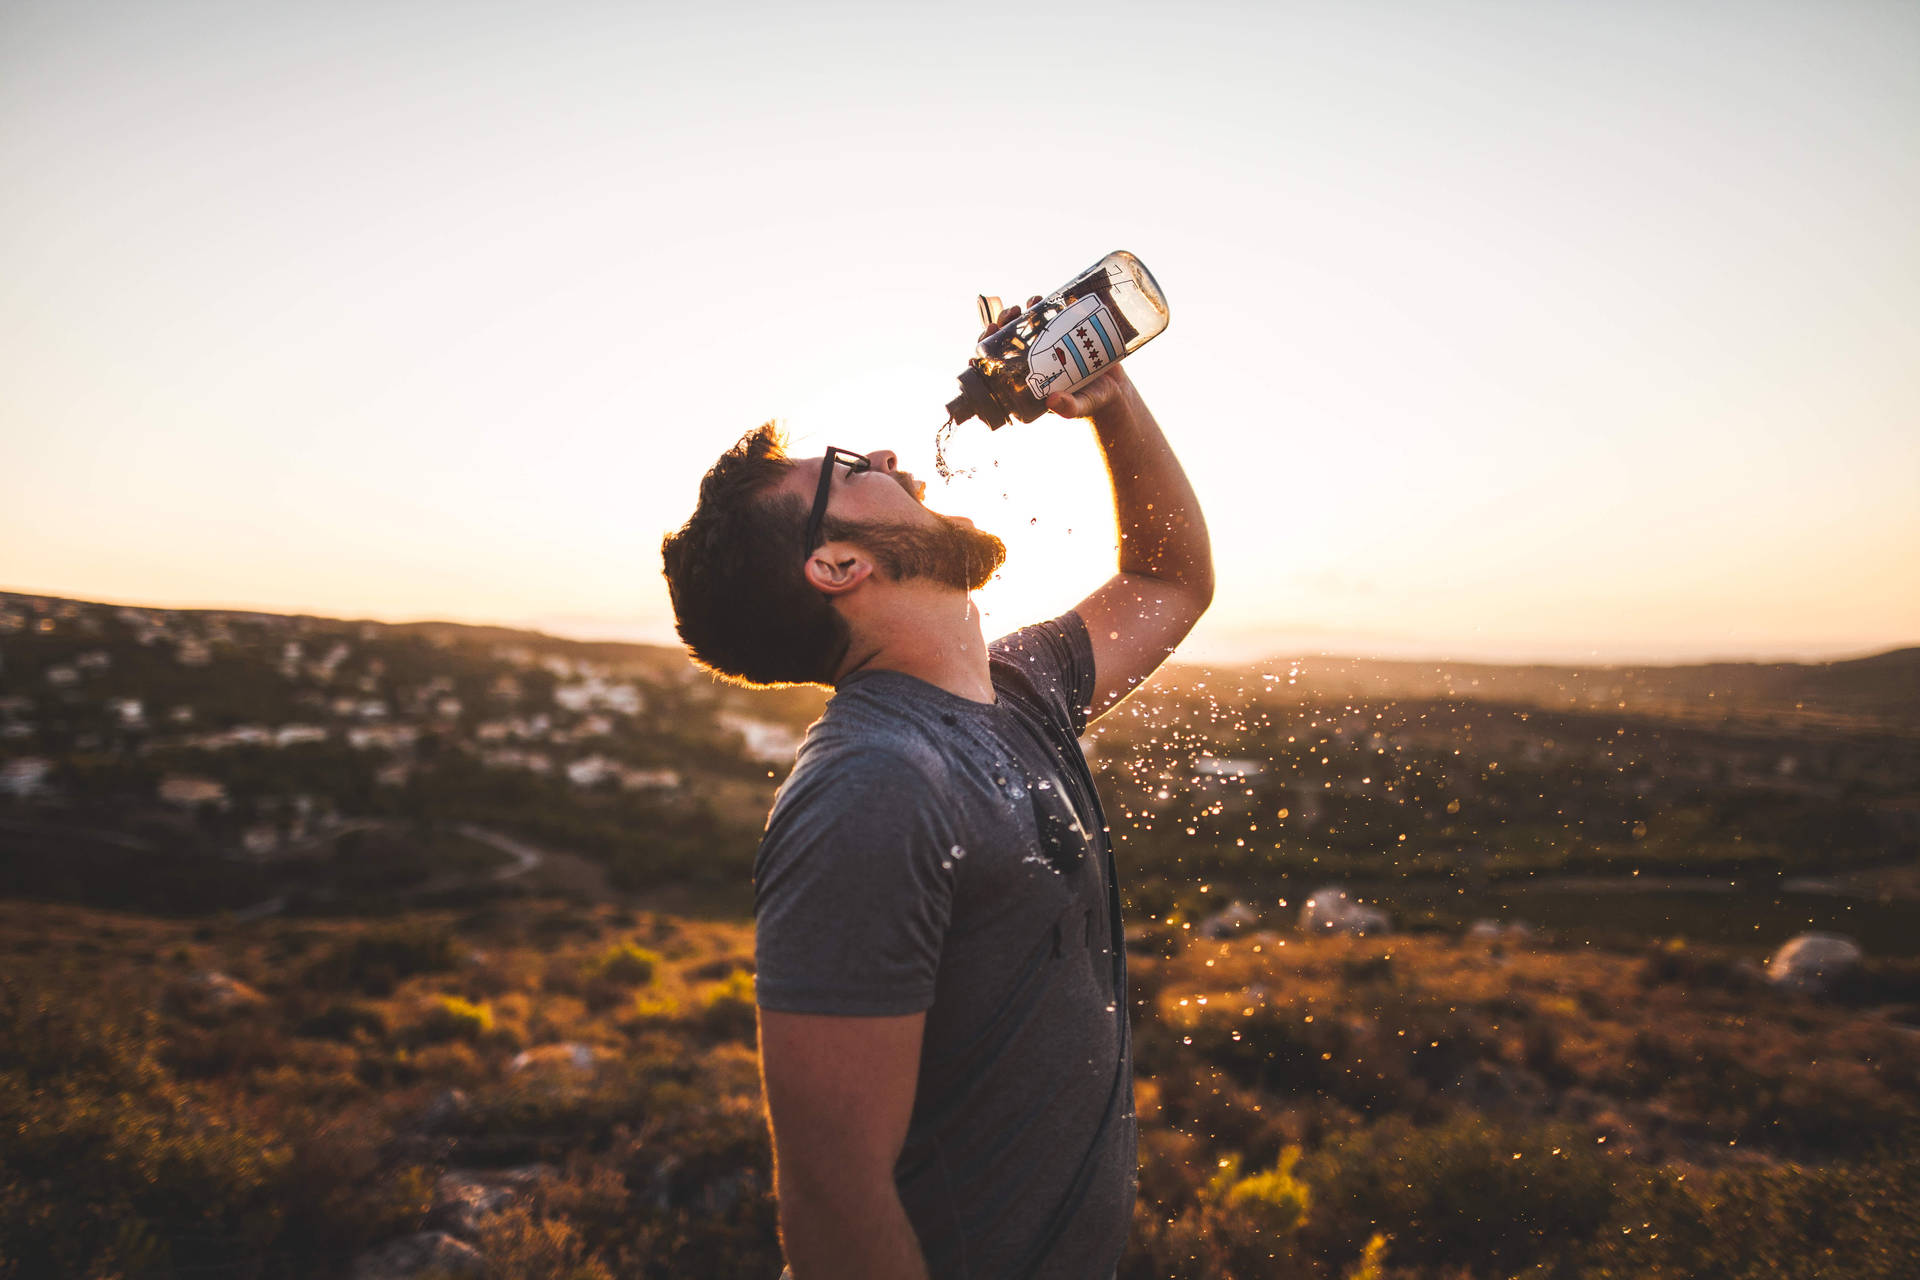 Download Bearded Guy Drinking Water From Bottle Wallpaper 